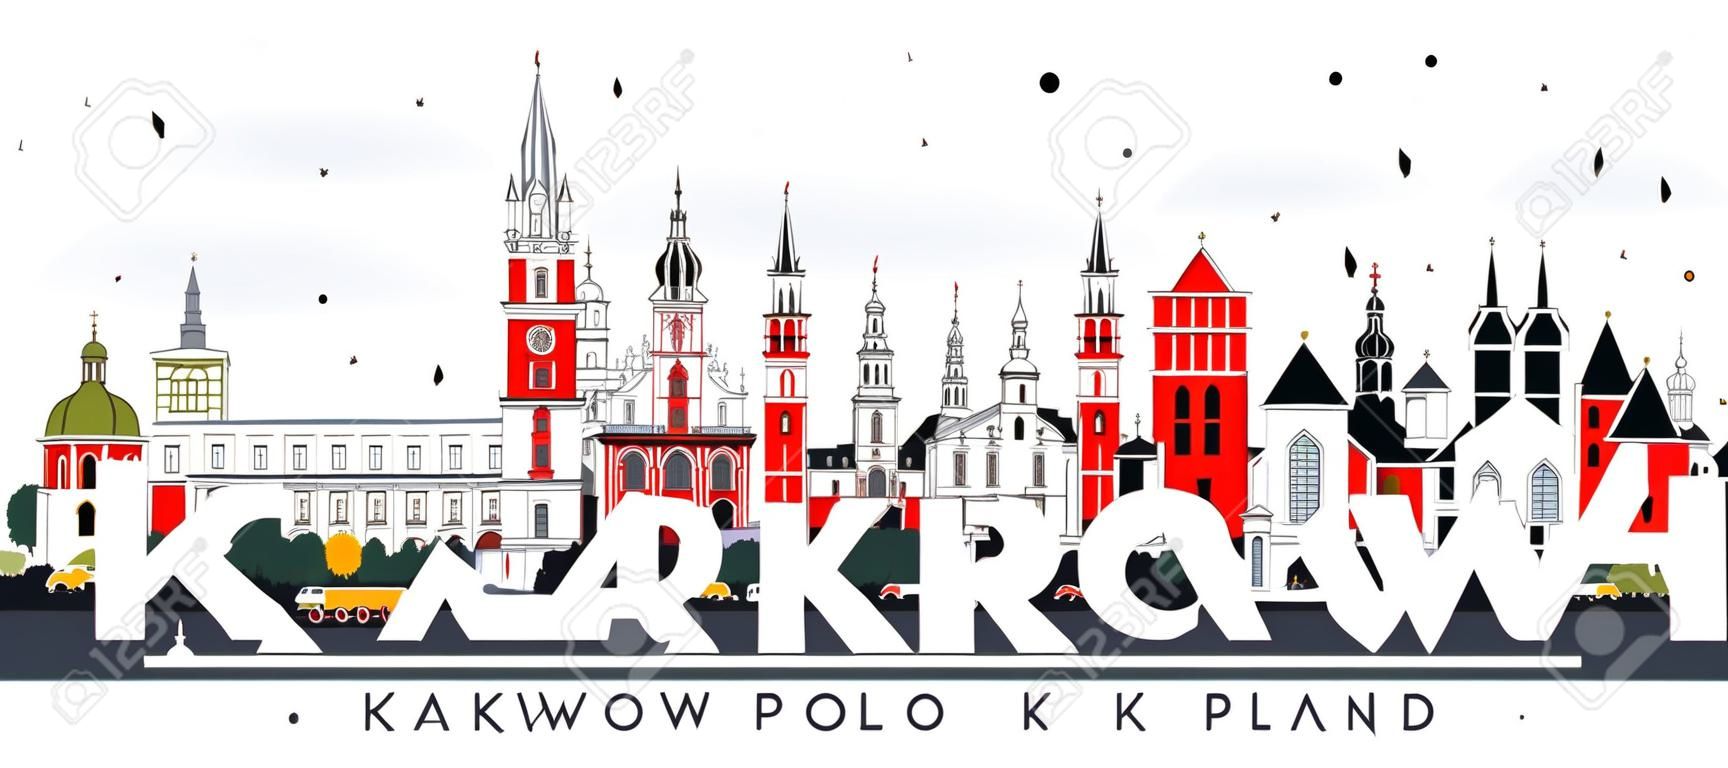 Krakau Polen Stadt Skyline mit Farbe isoliert isoliert auf weiß . Vektor-Illustration . Geschäftsreise- und Tourismuskonzept mit historischer Architektur . Stadtbild mit Sehenswürdigkeiten